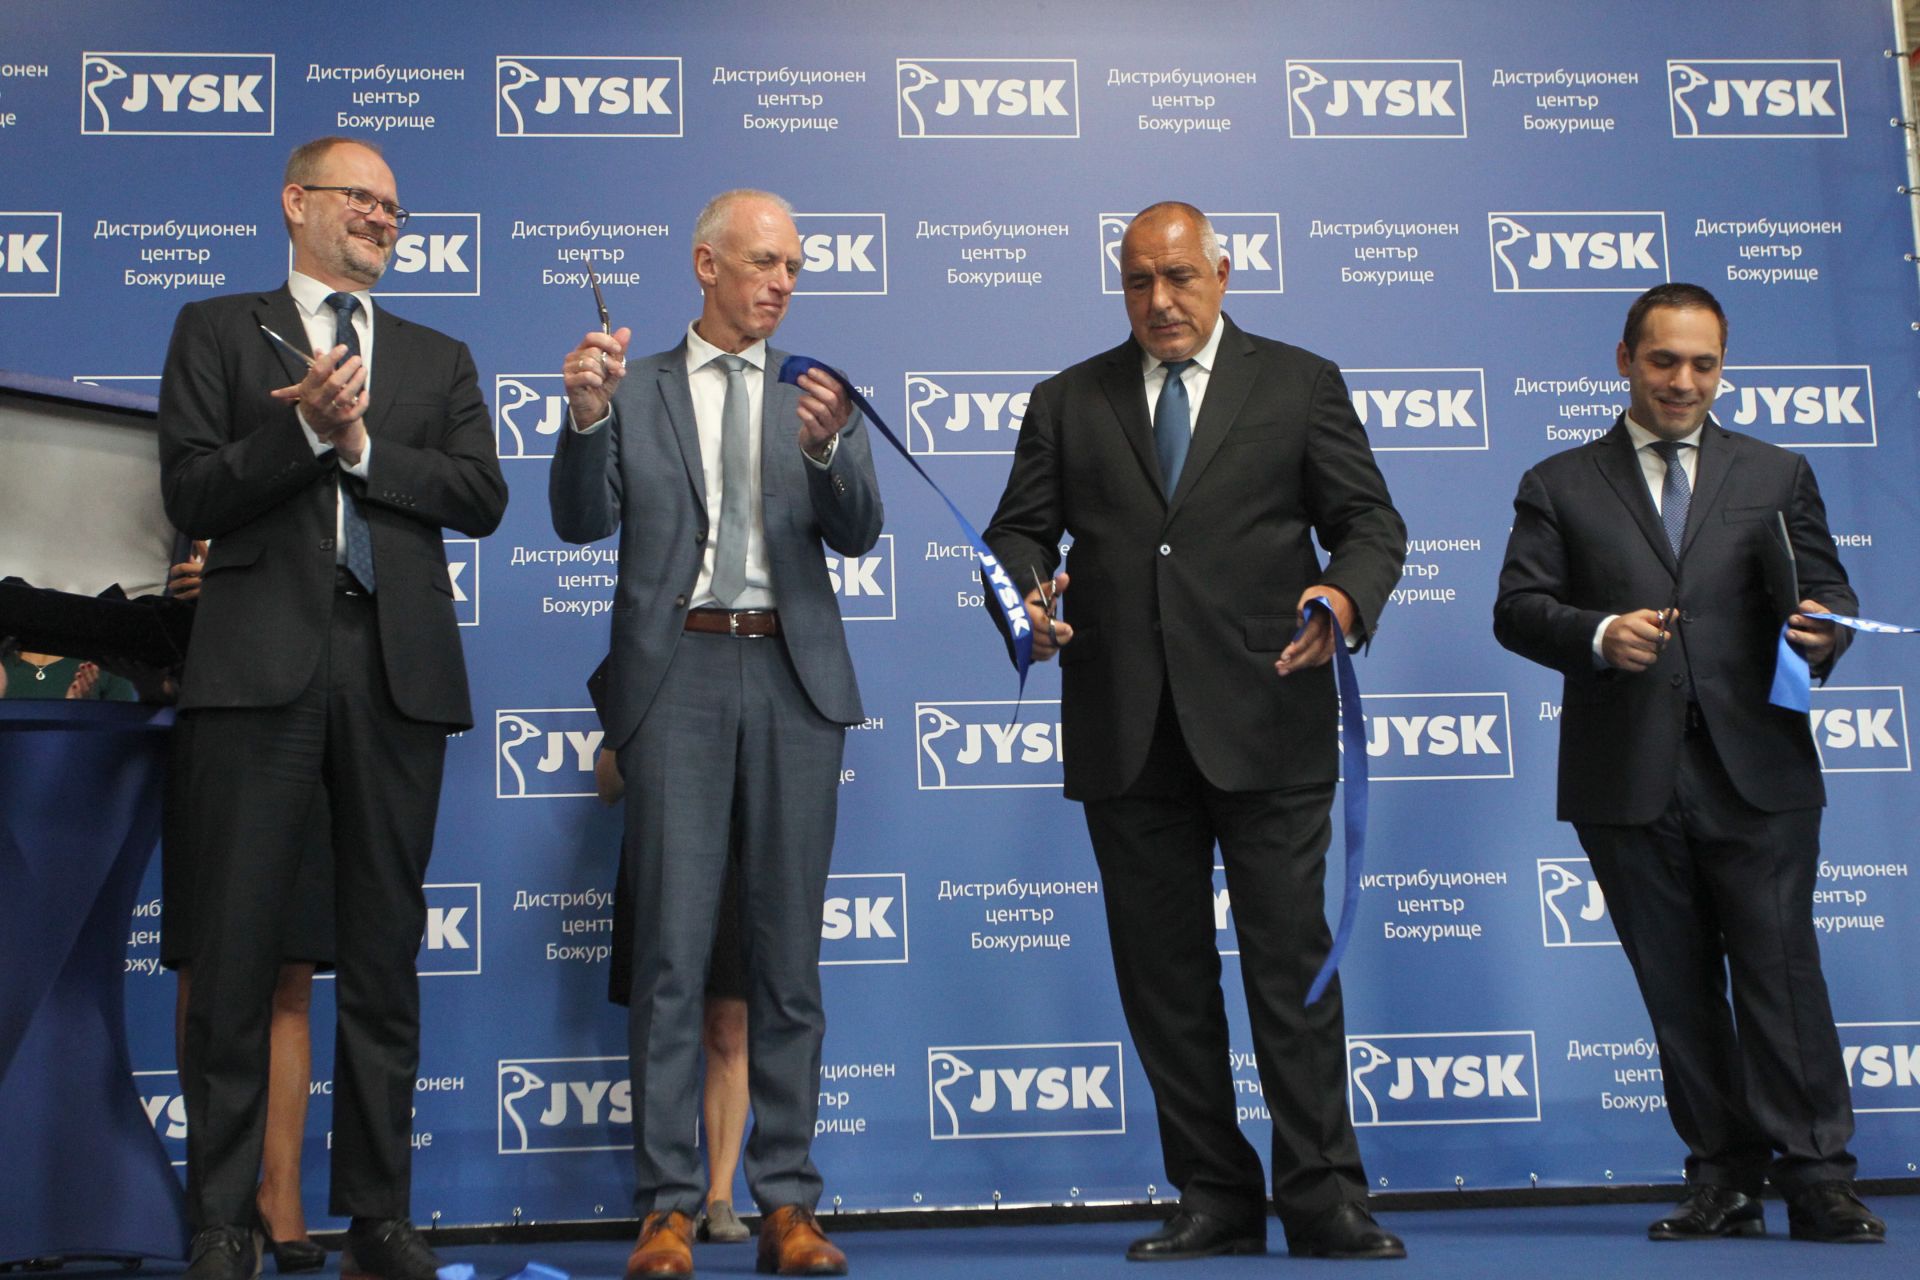 Посланикът на Дания (най-вляво) и премиерът на България прерязват лентата